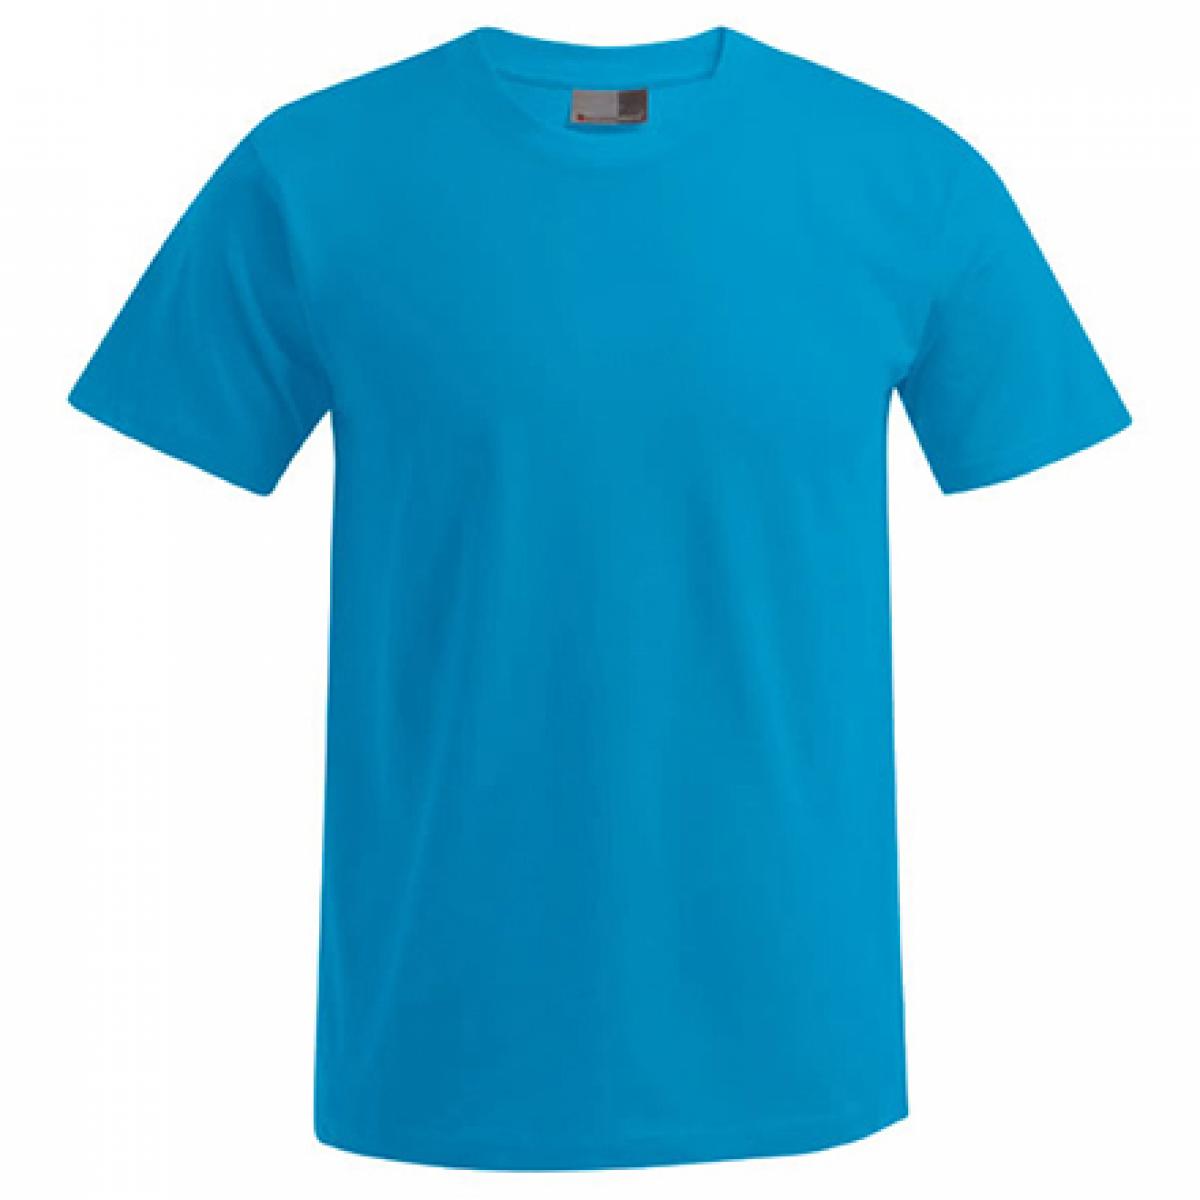 Hersteller: Promodoro Herstellernummer: 3000/3099 Artikelbezeichnung: Men´s Premium Herren T-Shirt - bis 5XL Farbe: Turquoise